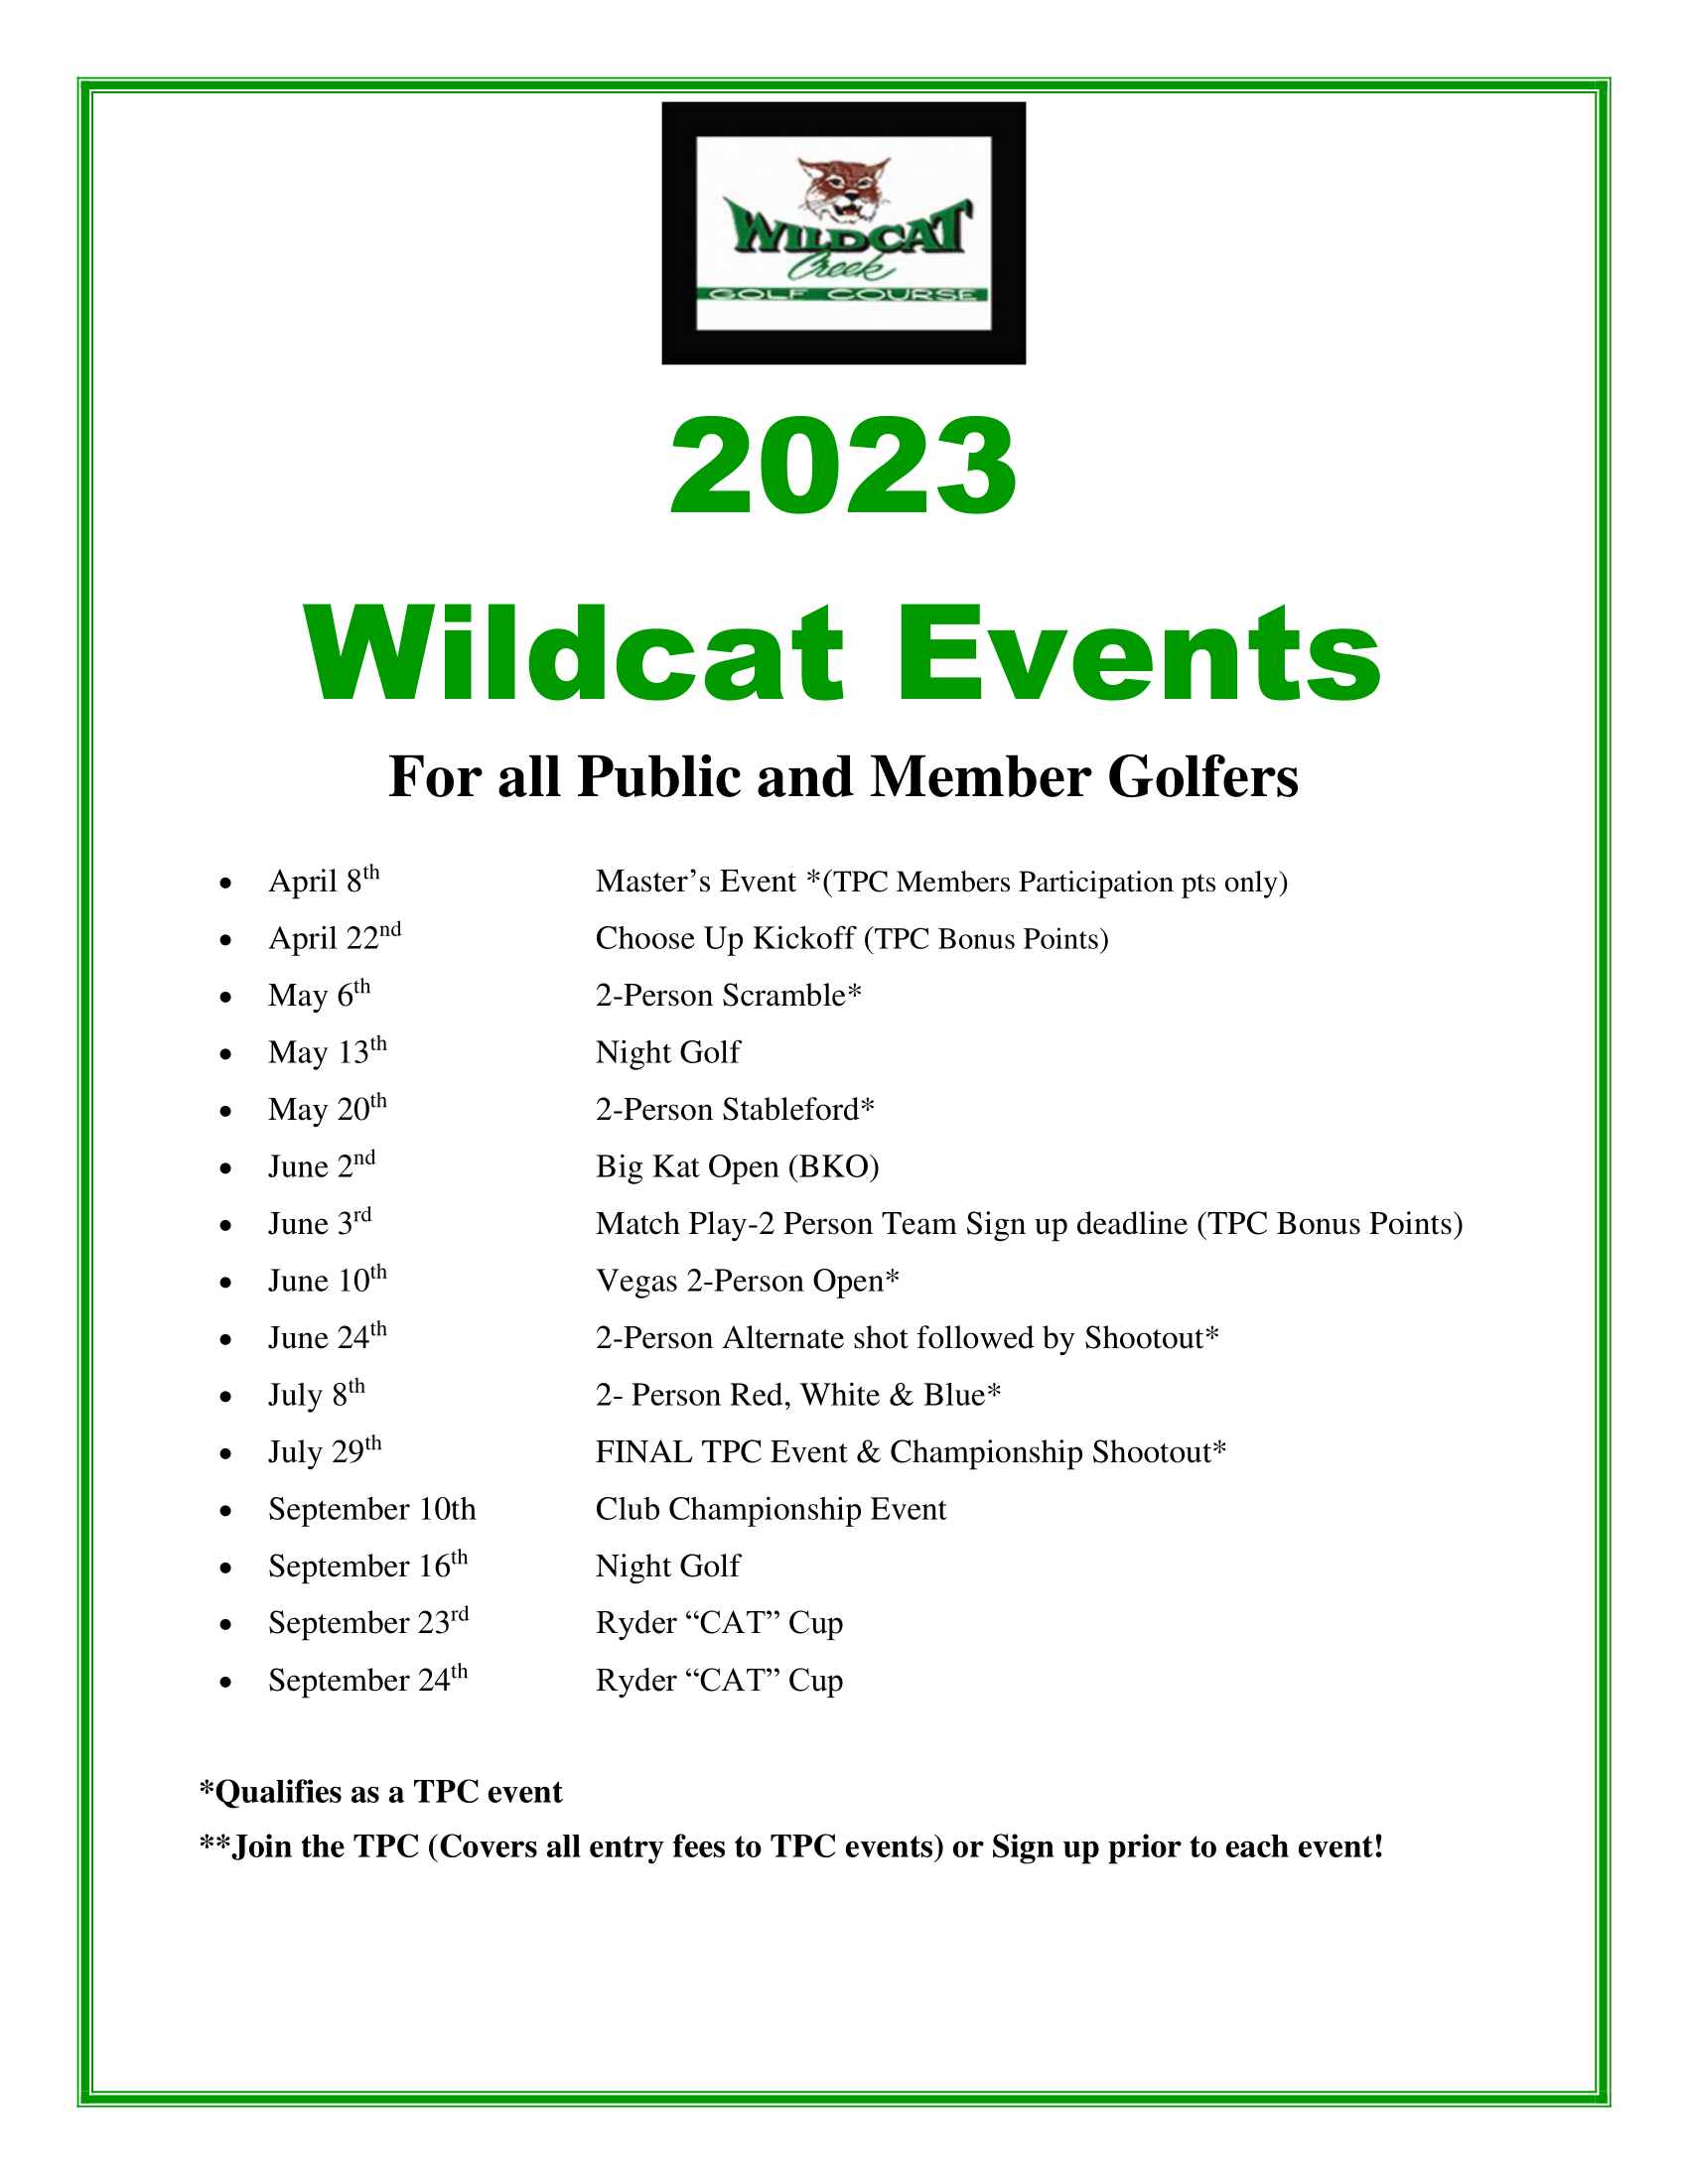 Wildcat 2023 Events12 1 1